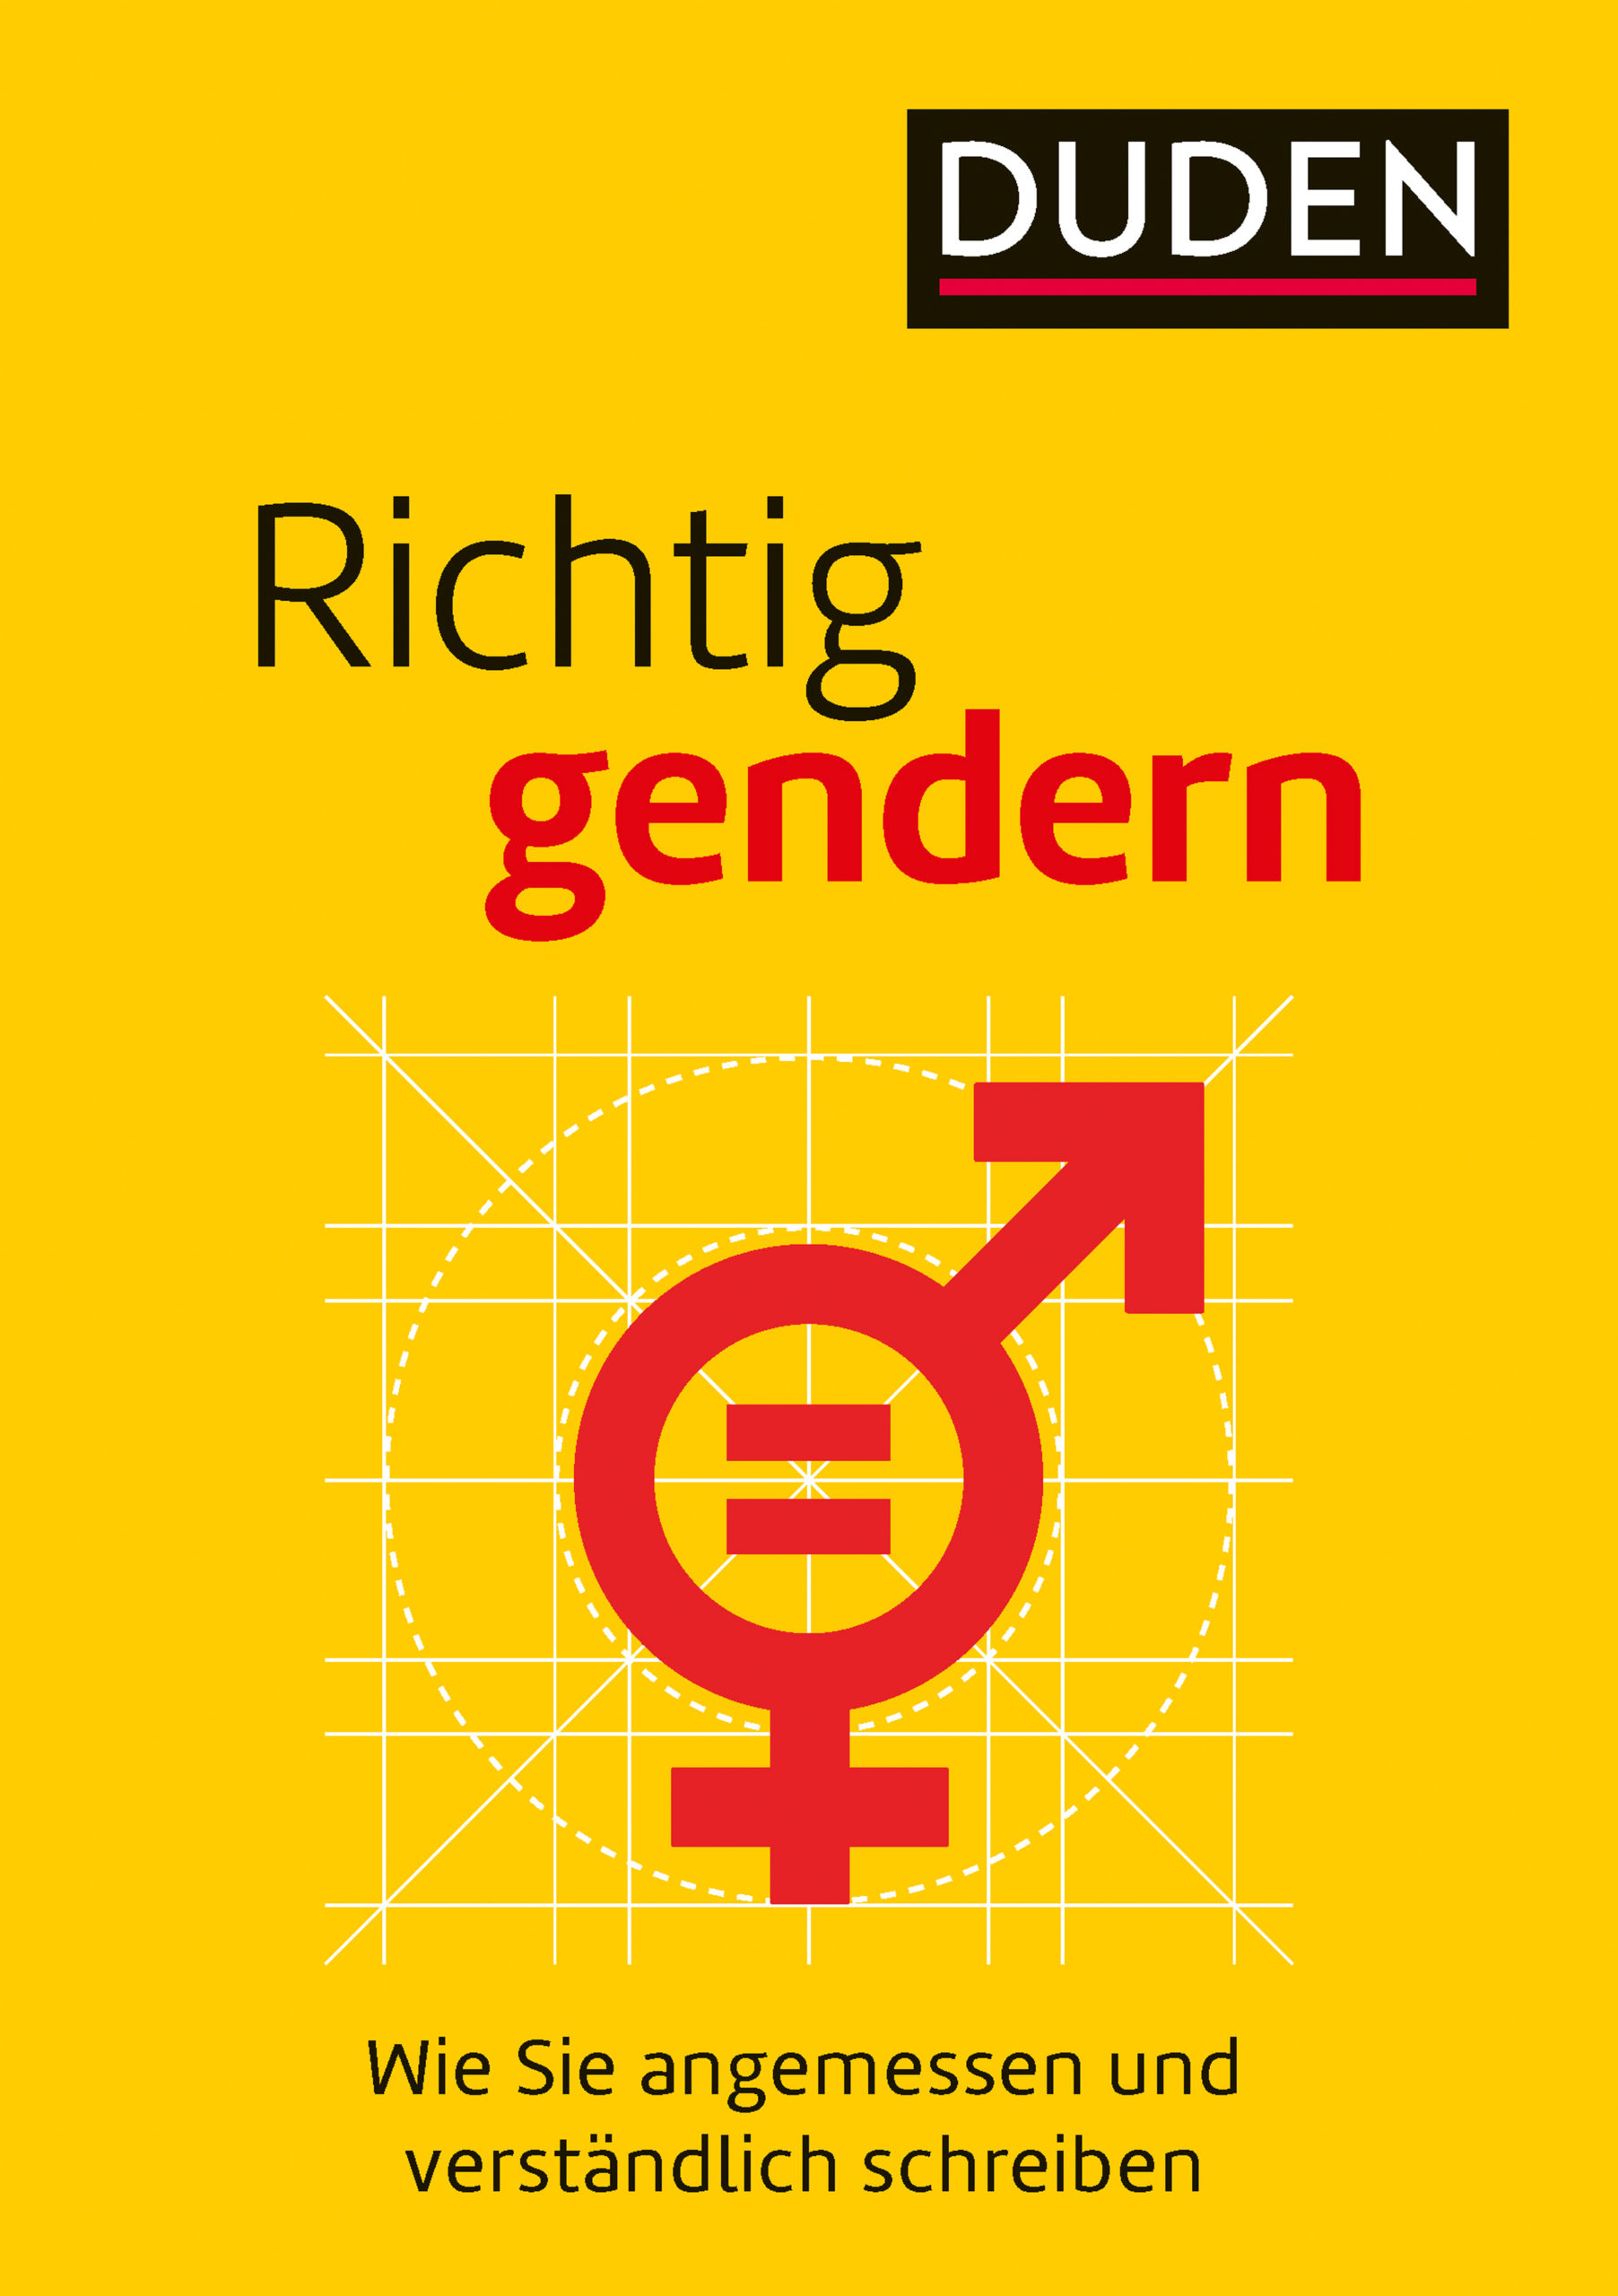 “Schluss mit dem Gender-Unfug!” – Zwei Petitionen gegen die Gender-Sprache